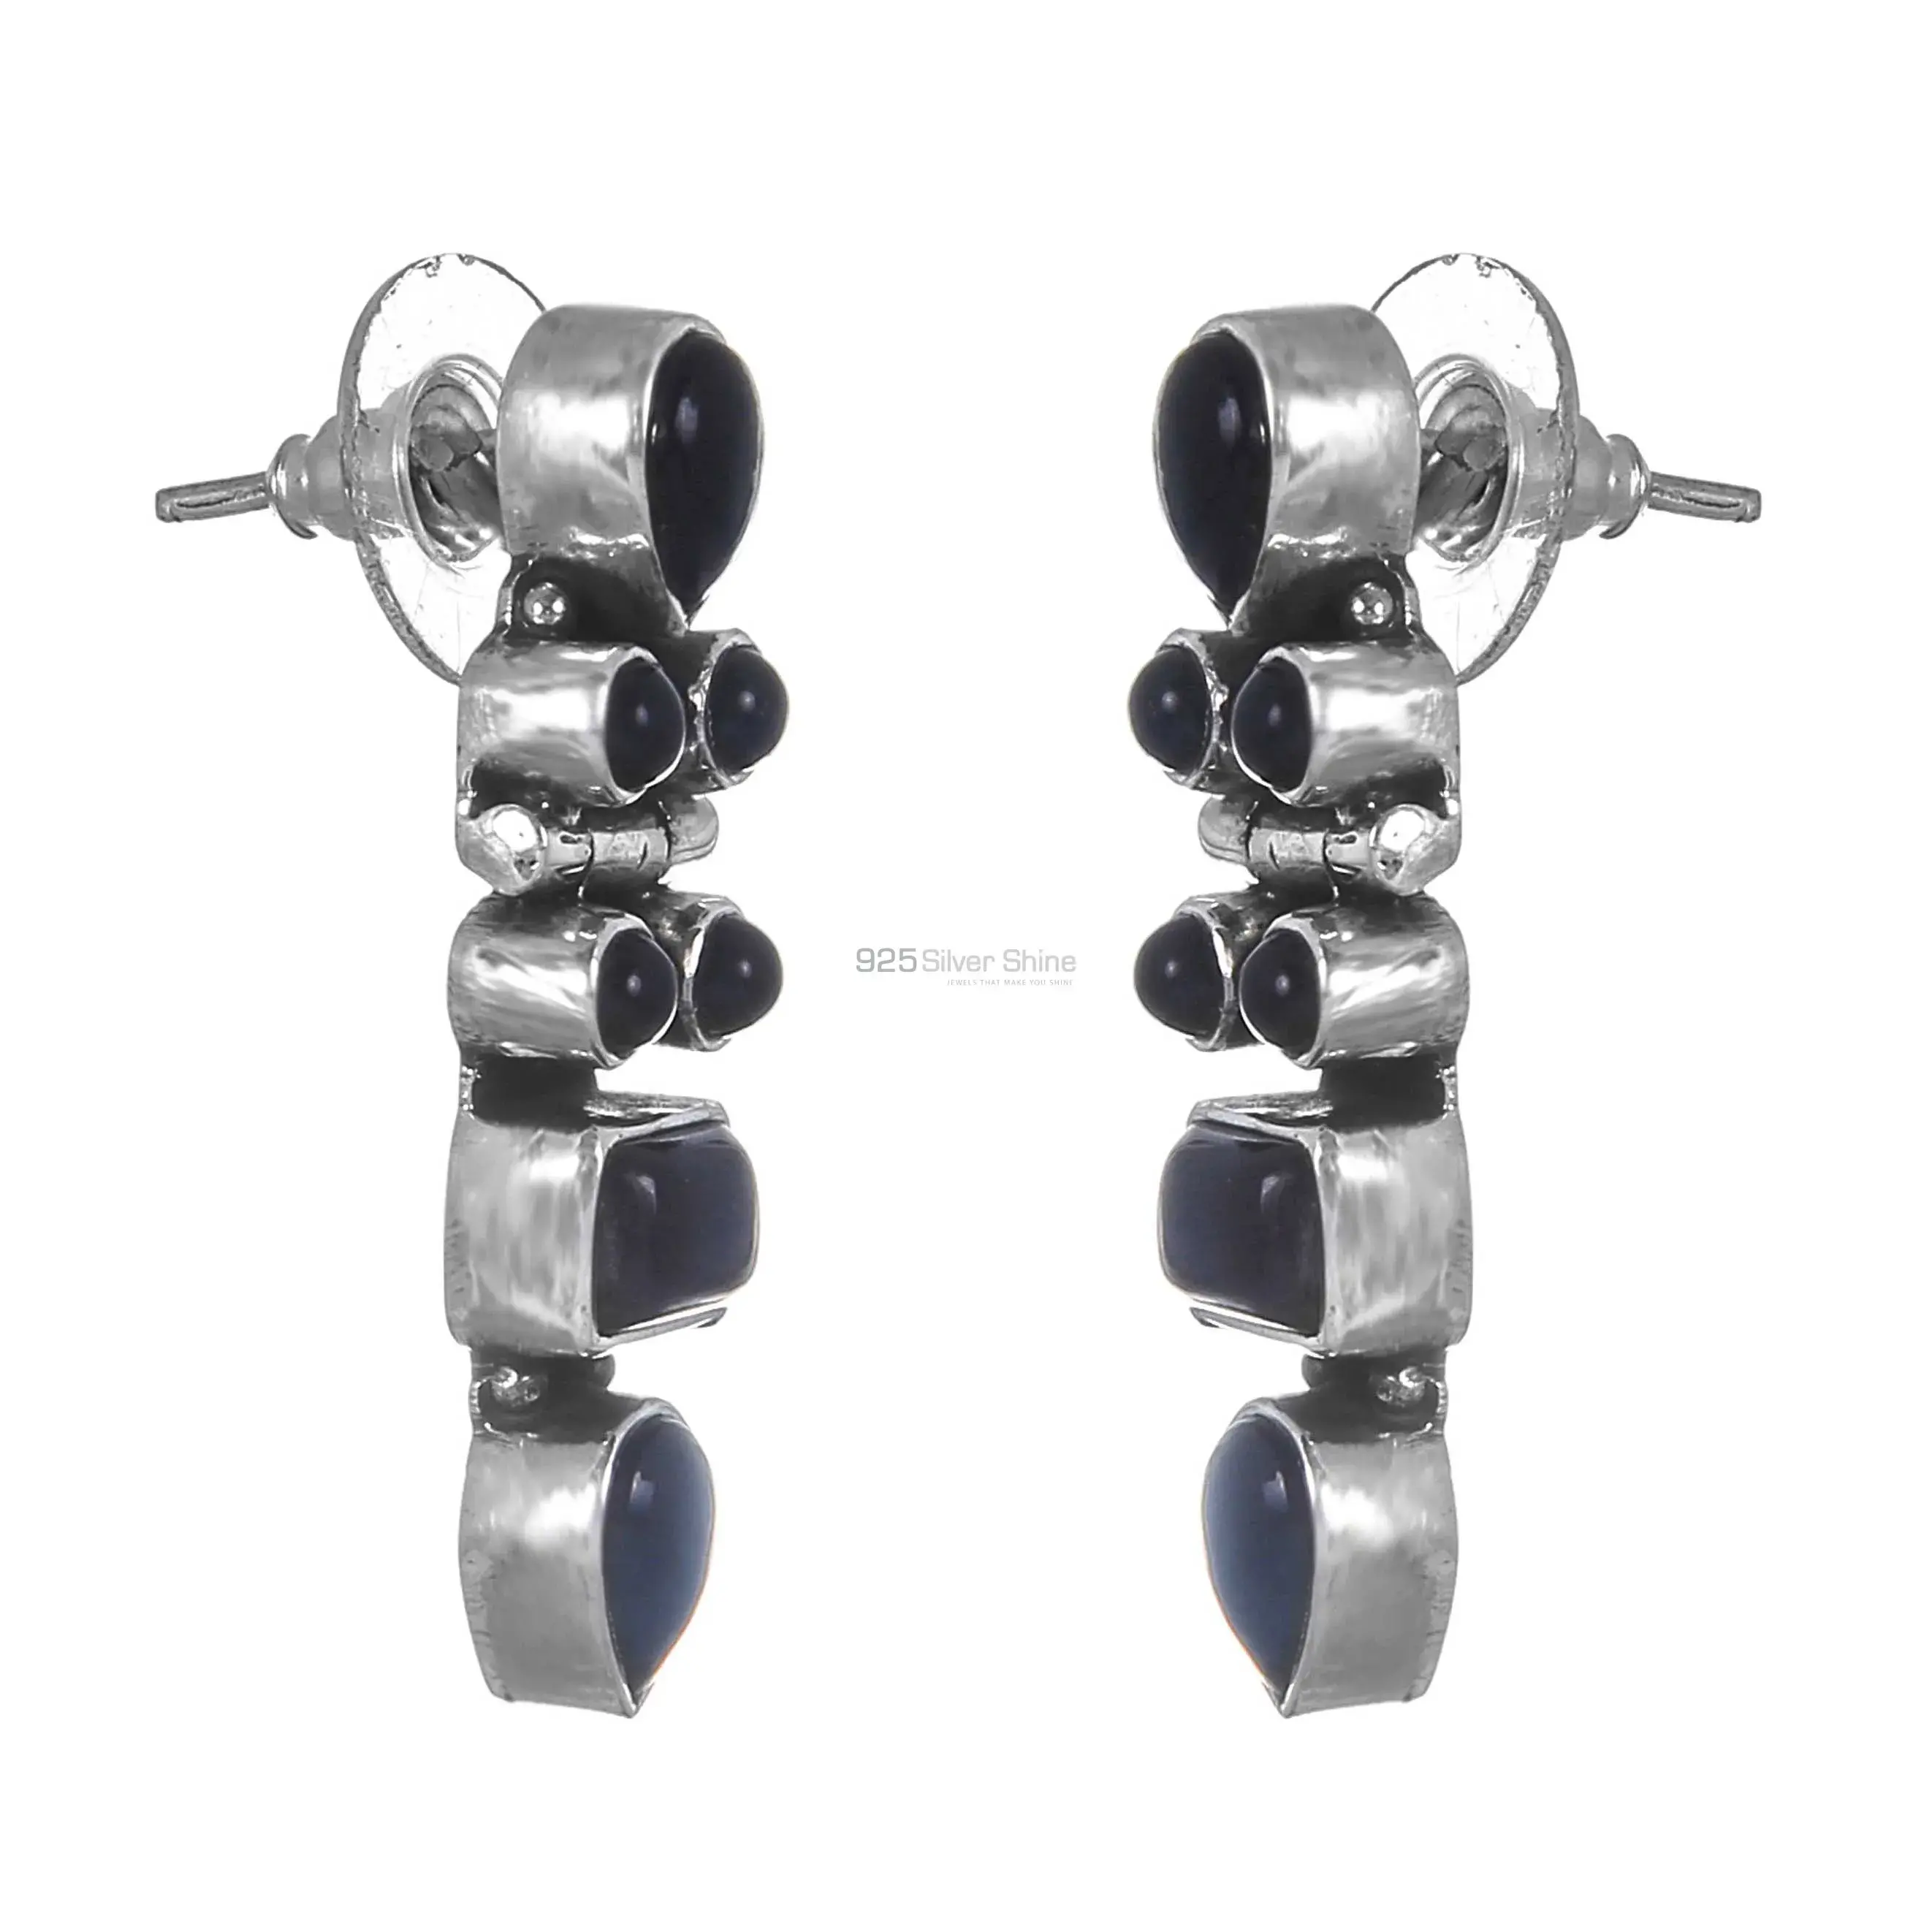 Black onyx Gemstone Earrings Wholesaler In 925 Sterling Silver Jewelry 925SE255_0